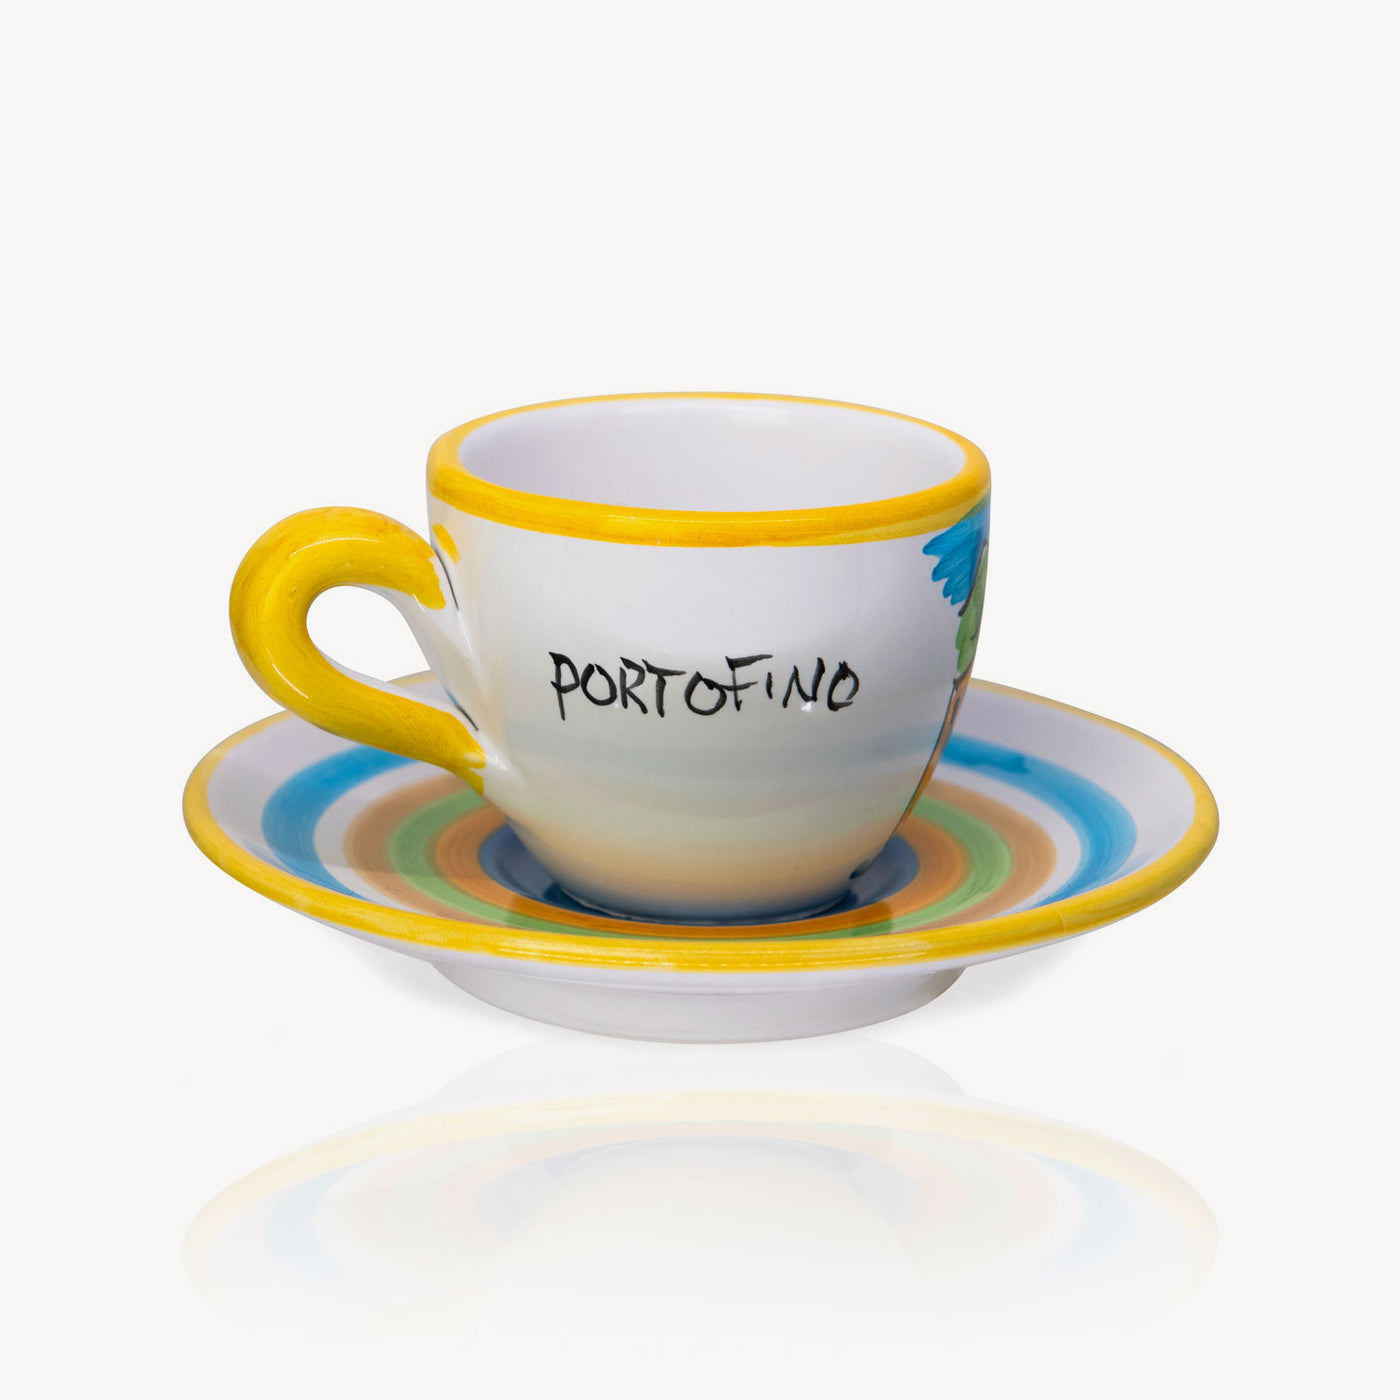 "Portofino" - Tasse à café peinte à la main